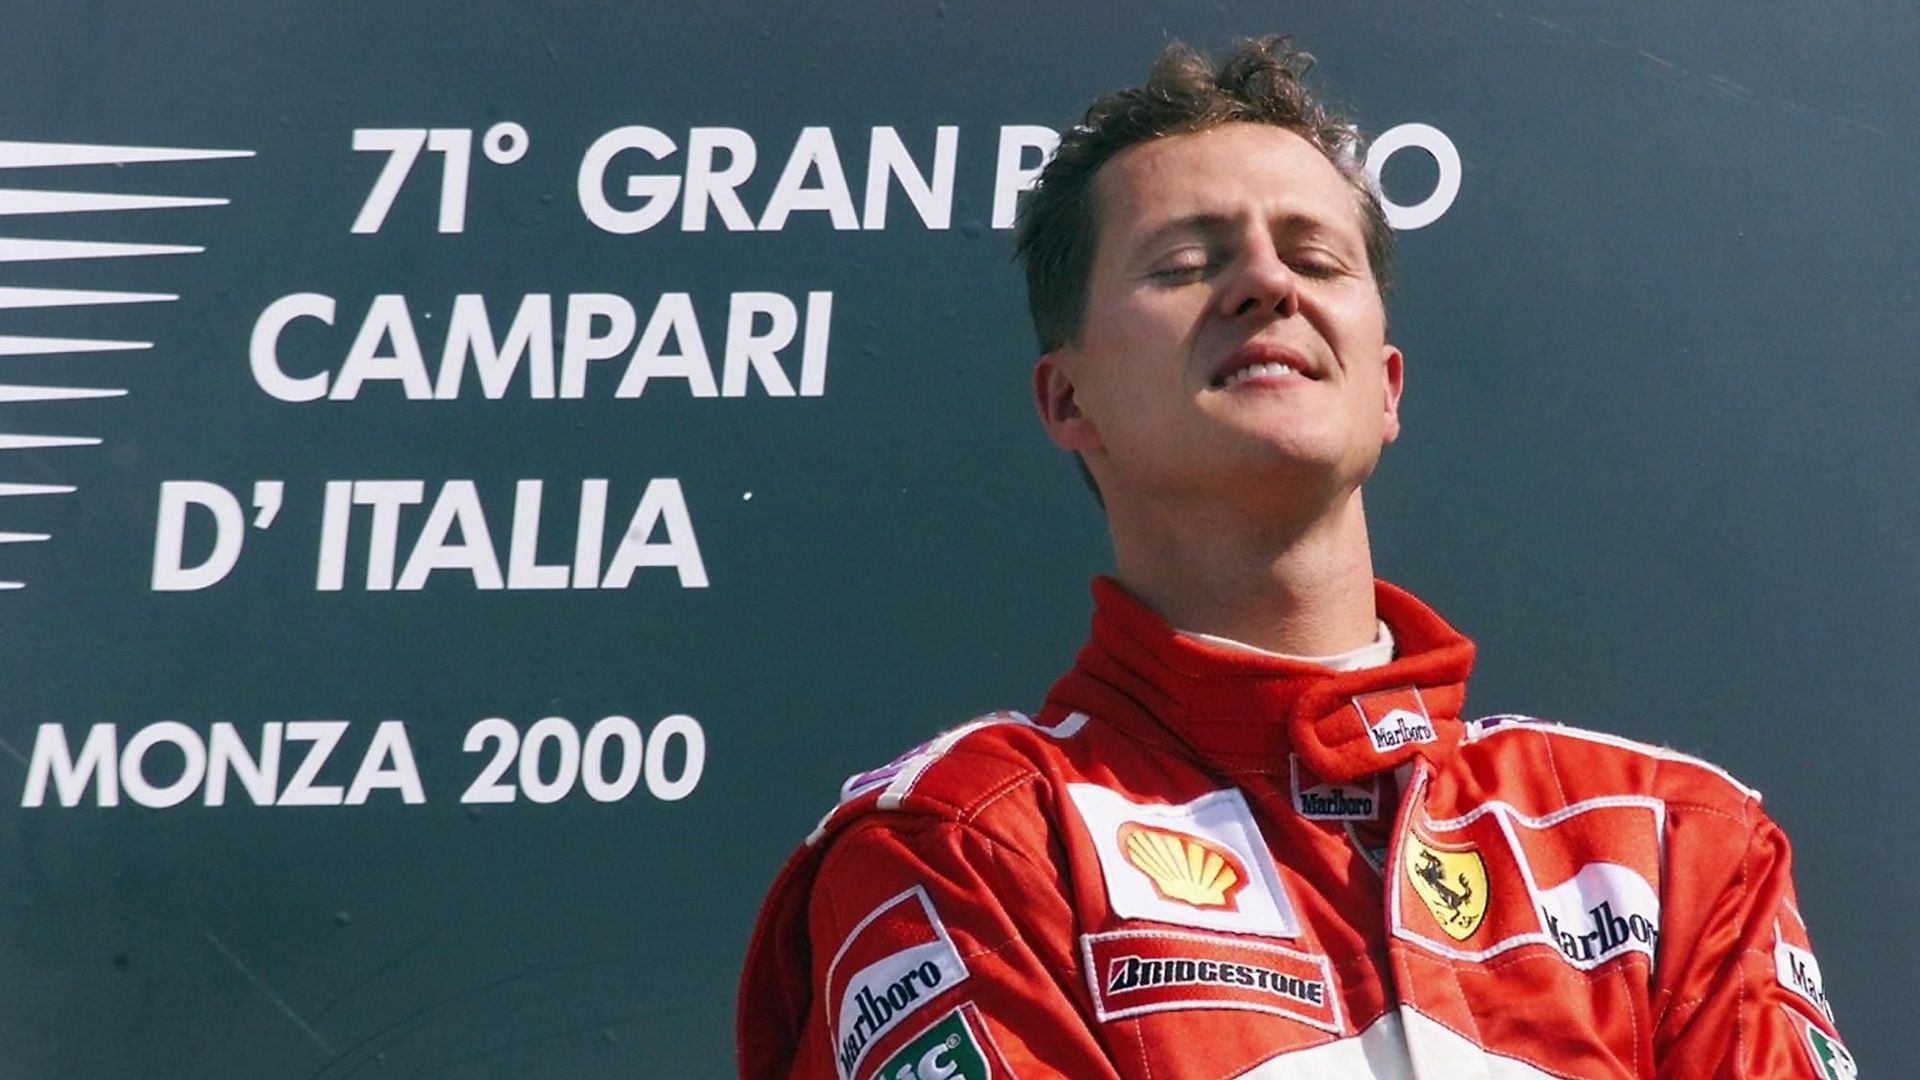 Le 10 septembre 2000 à Monza, Schumacher égale le nombre de victoires d'Ayrton Senna (41 victoires). 